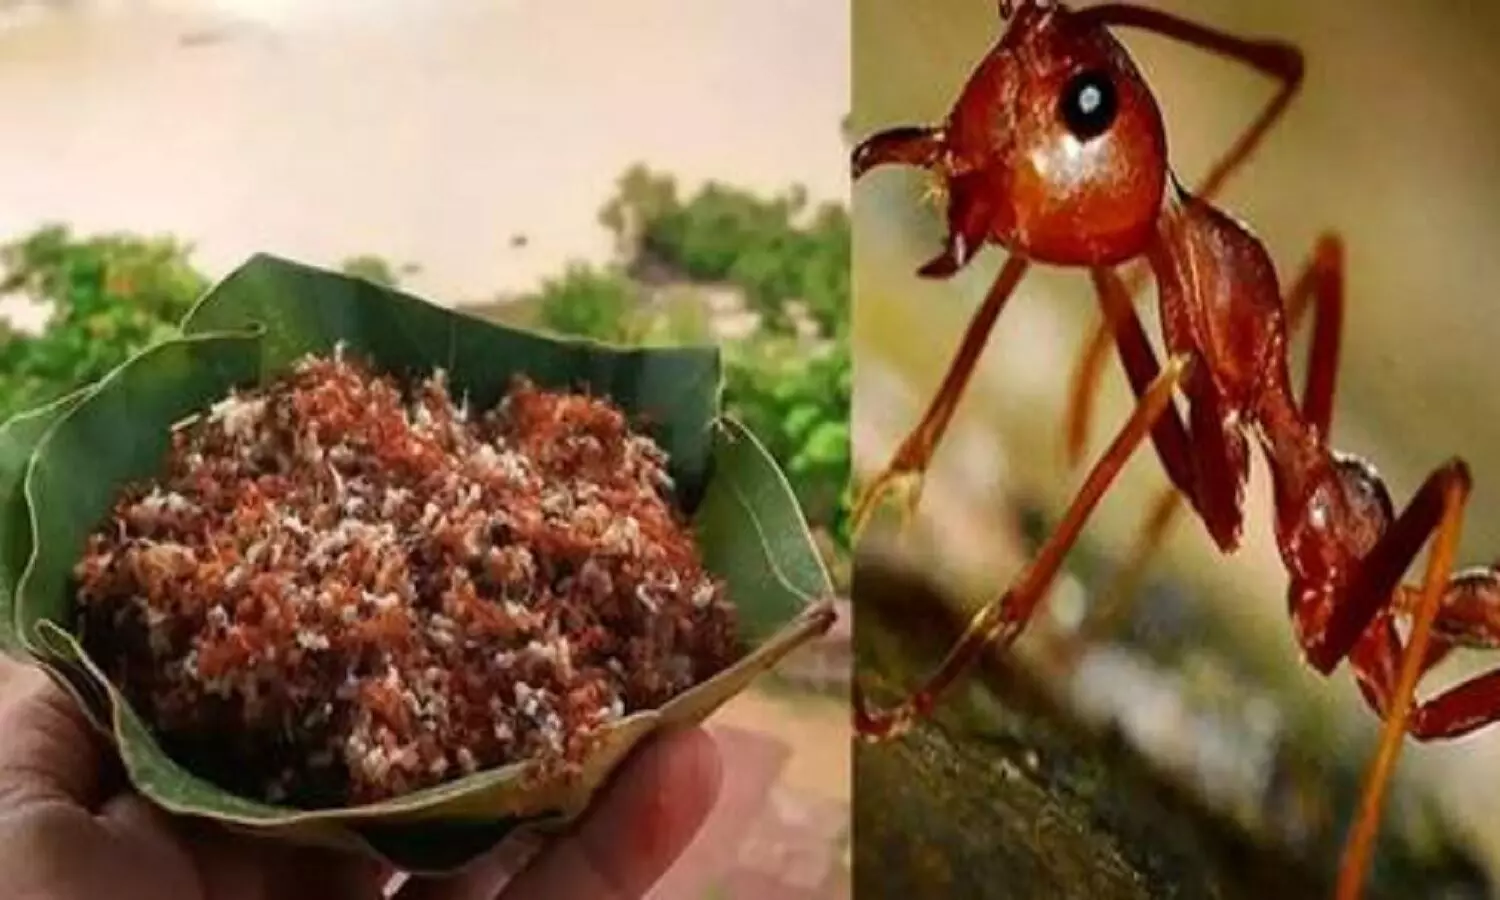 Red Ant Chutney: ओडिशा के लोगों को पसंद है लाल चींटी की चटनी! GI Tag की मांग कर रहे